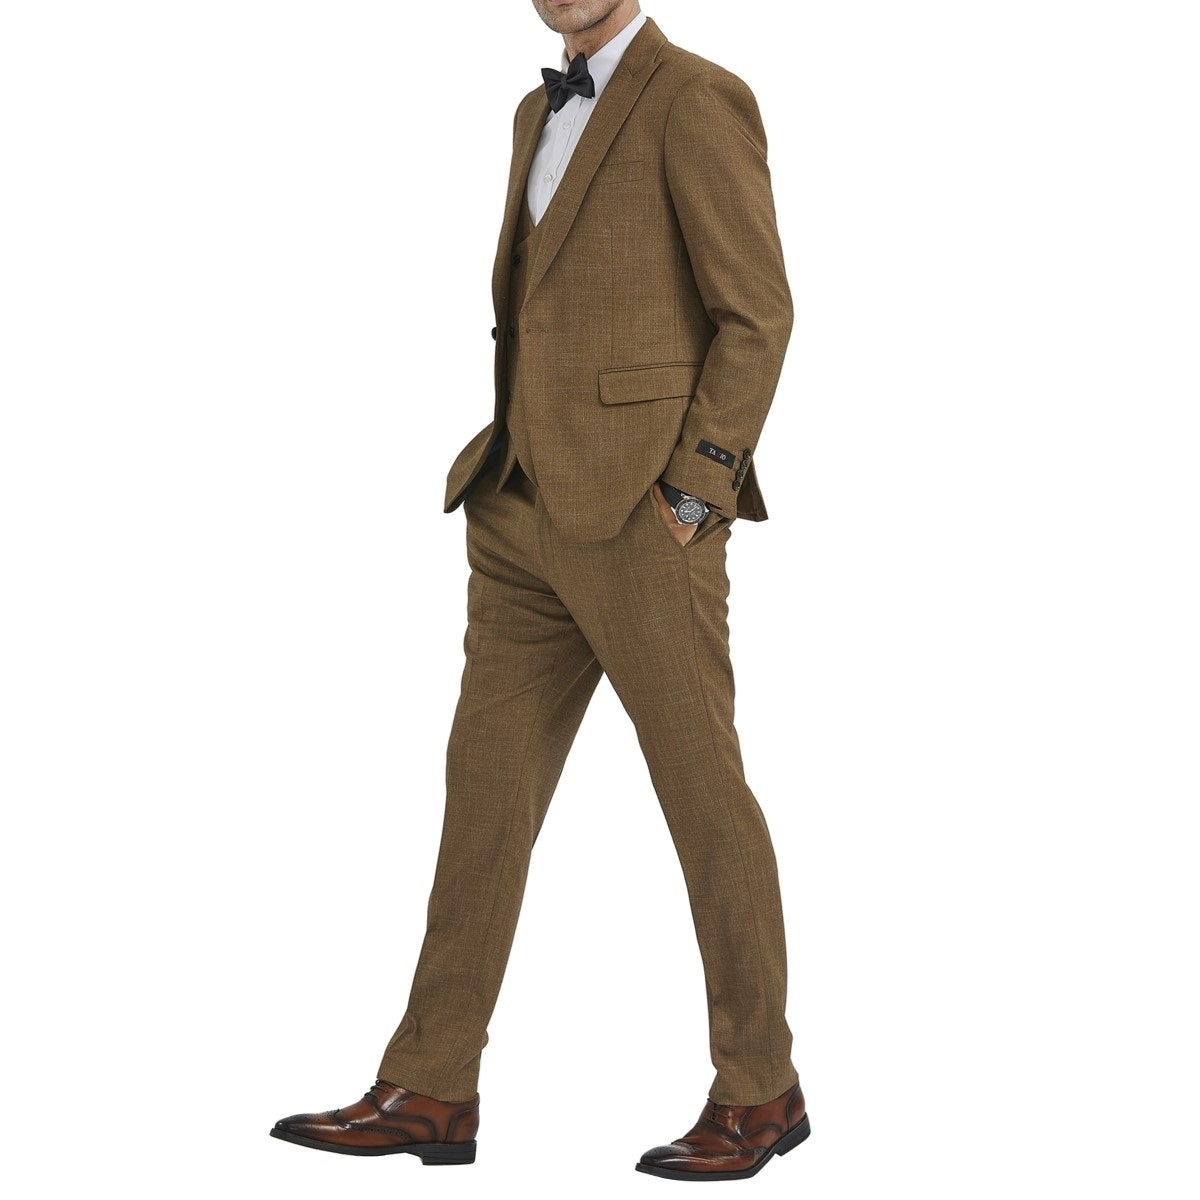 Traje Formal para Hombre TA-M349SK-02 - Formal Suit for Men